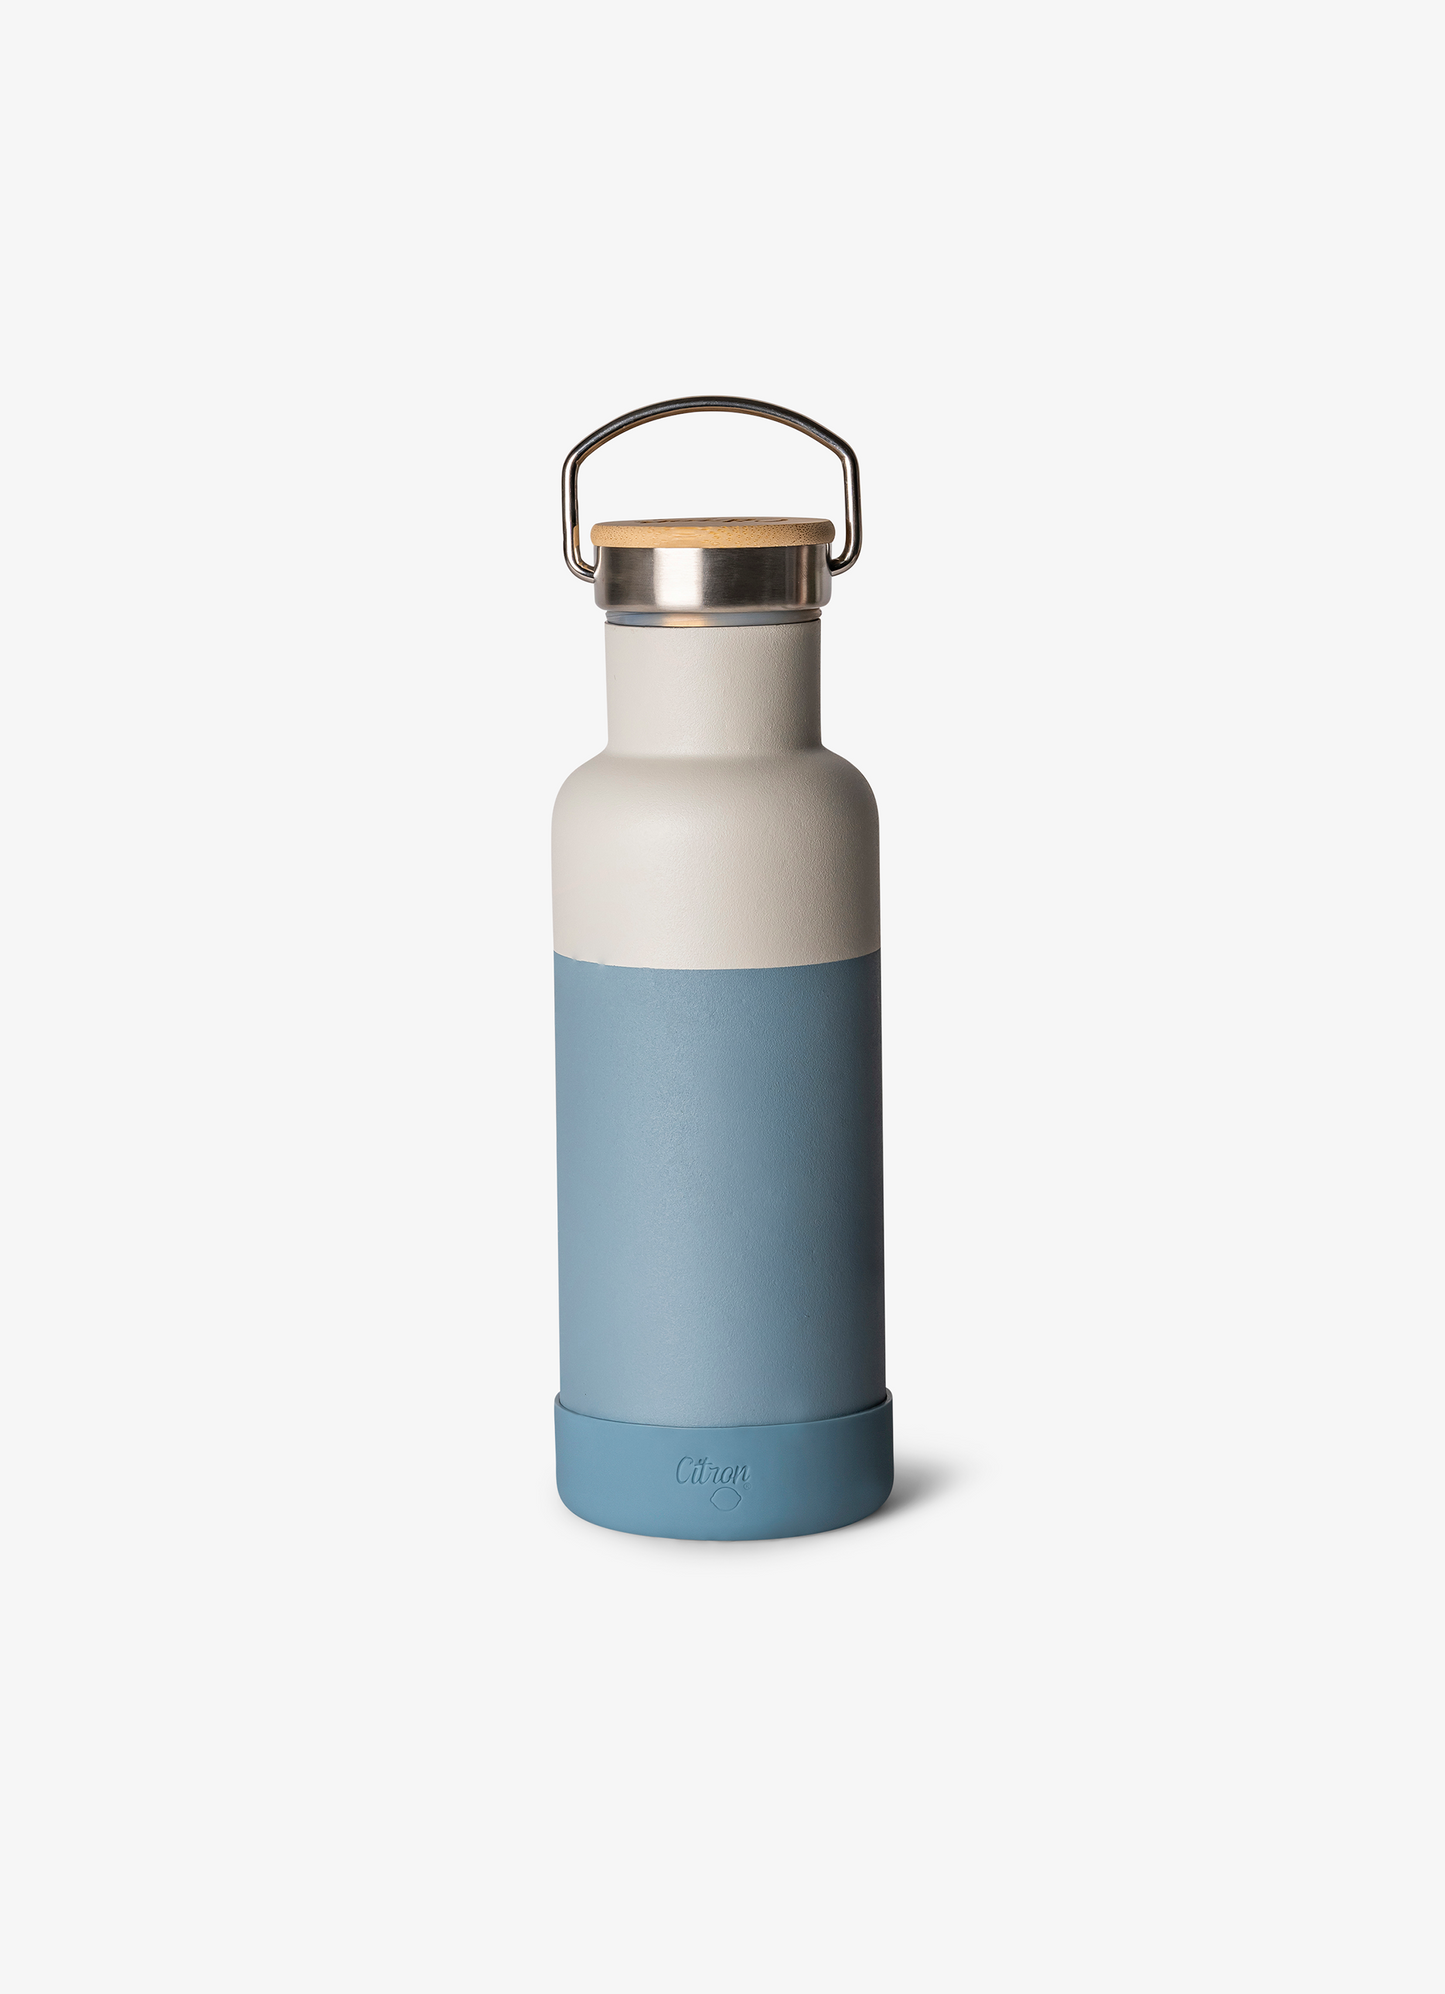 زجاجة مياه - بسعة 500 مل - أزرق مترب